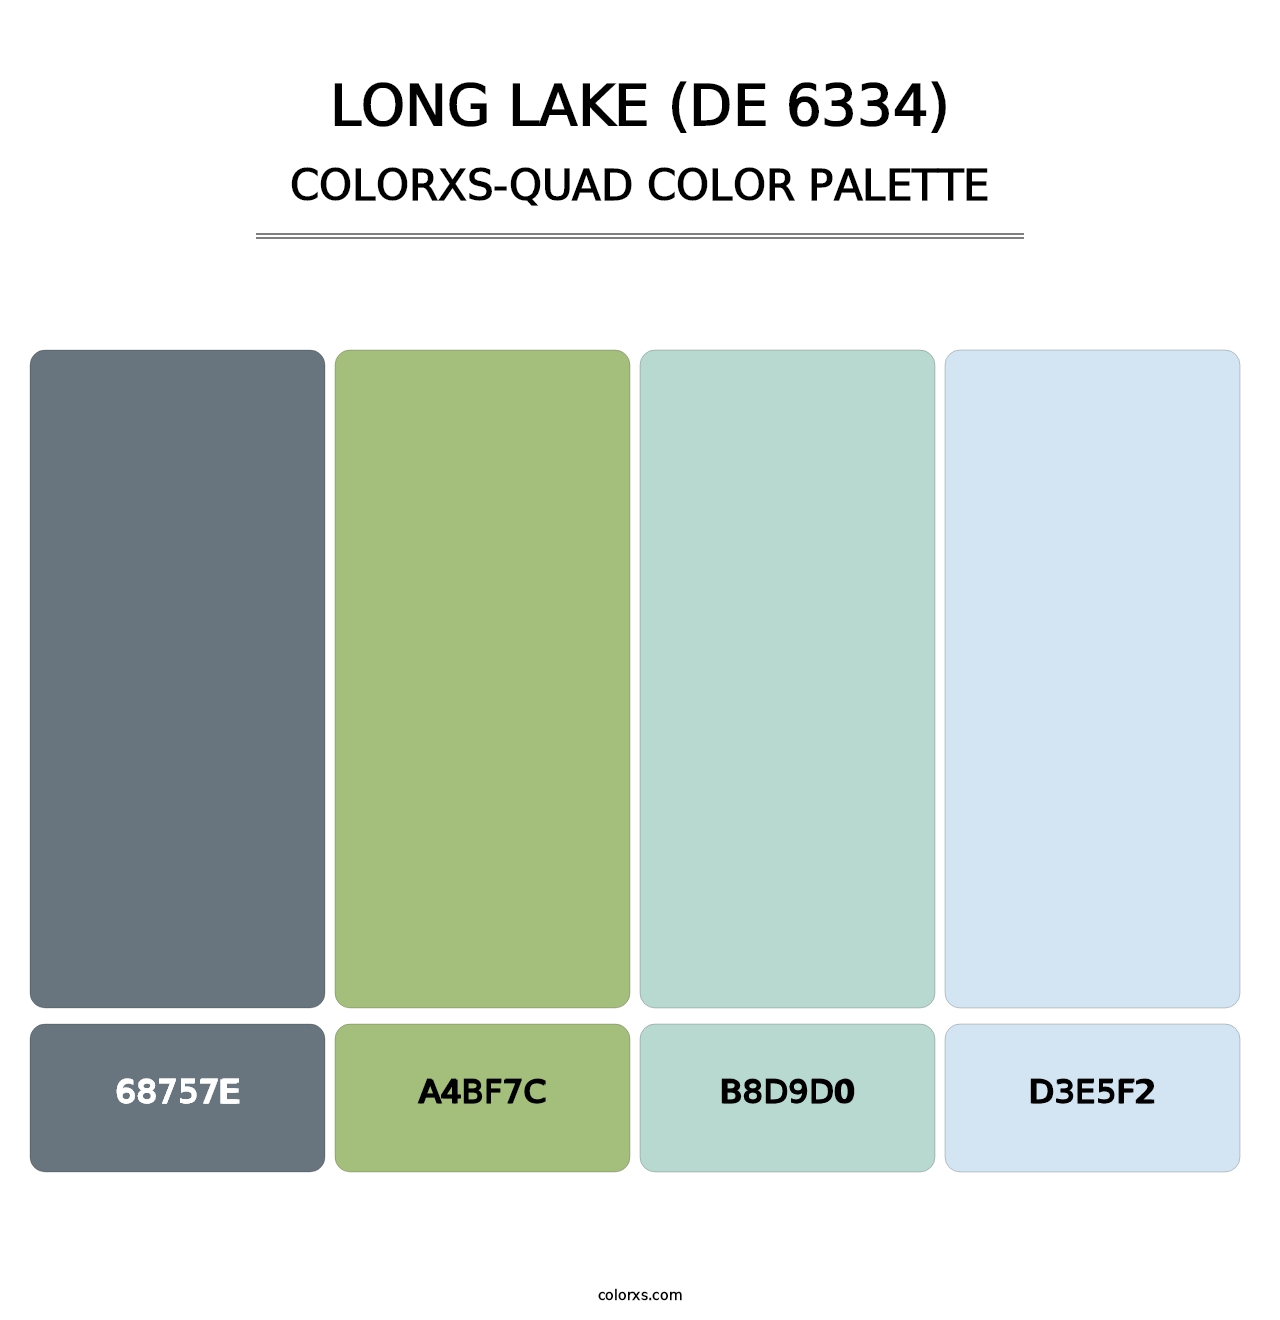 Long Lake (DE 6334) - Colorxs Quad Palette